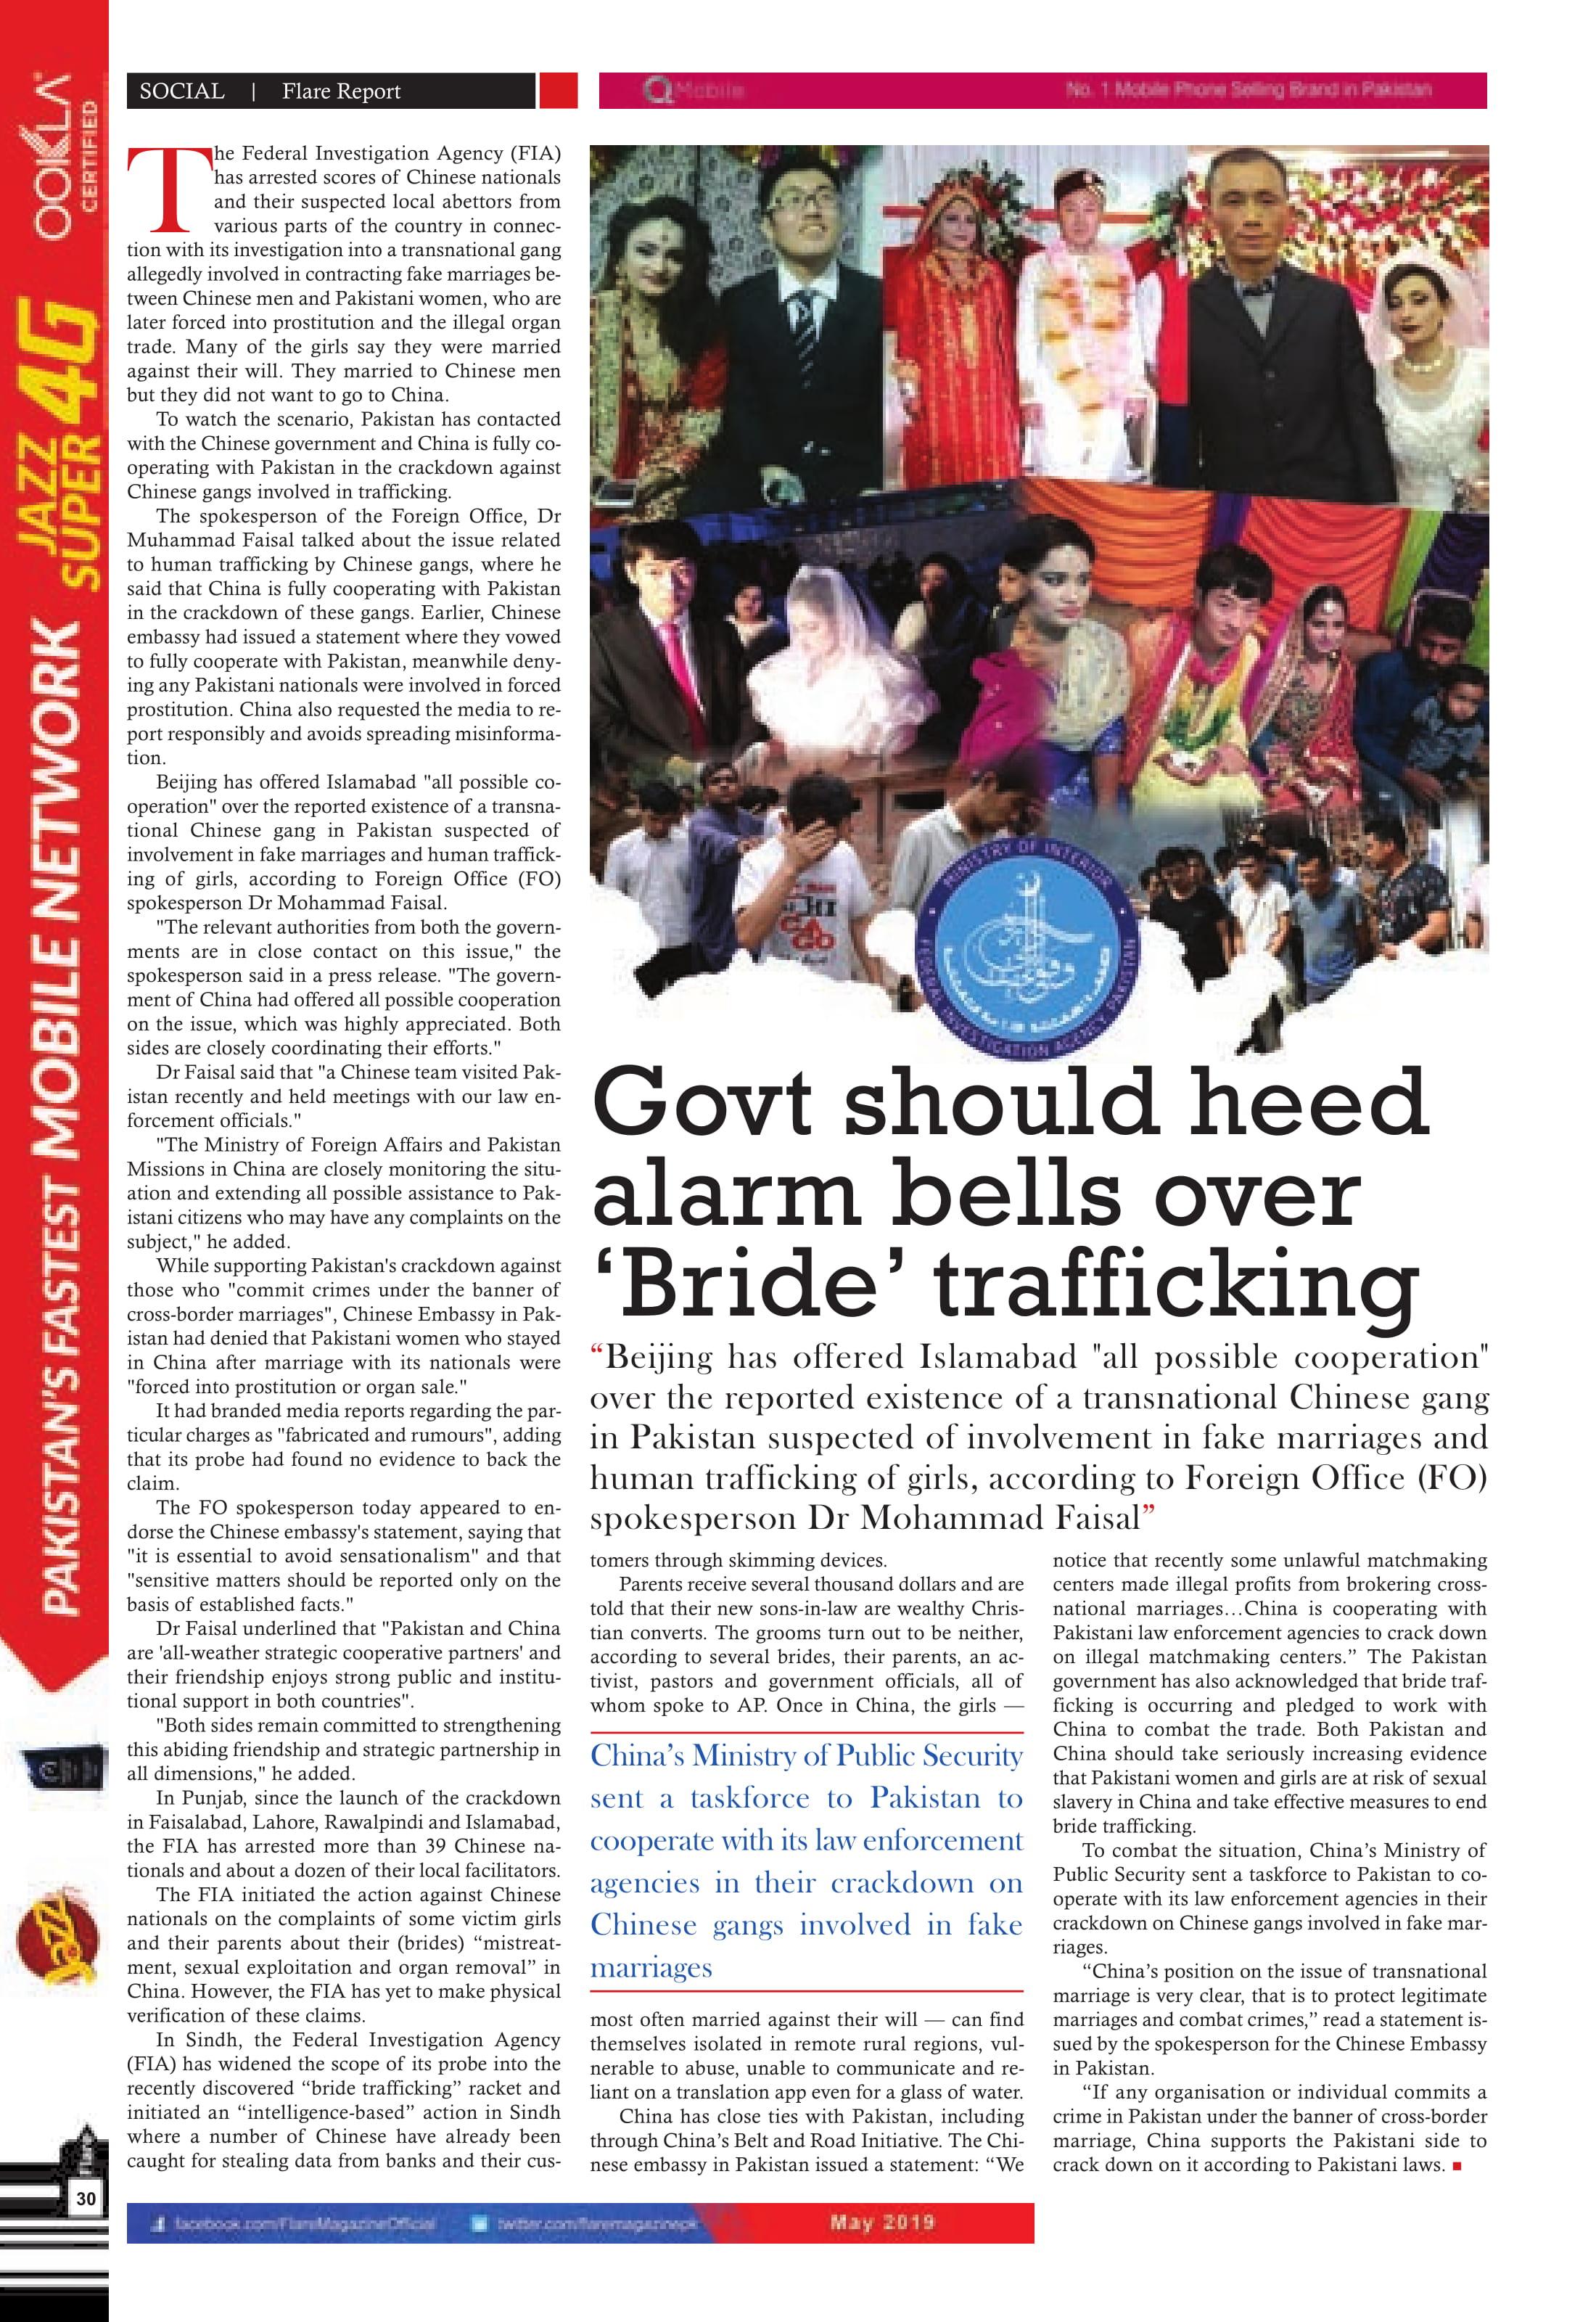 Govt should heed alarm bellsover bride trafficking